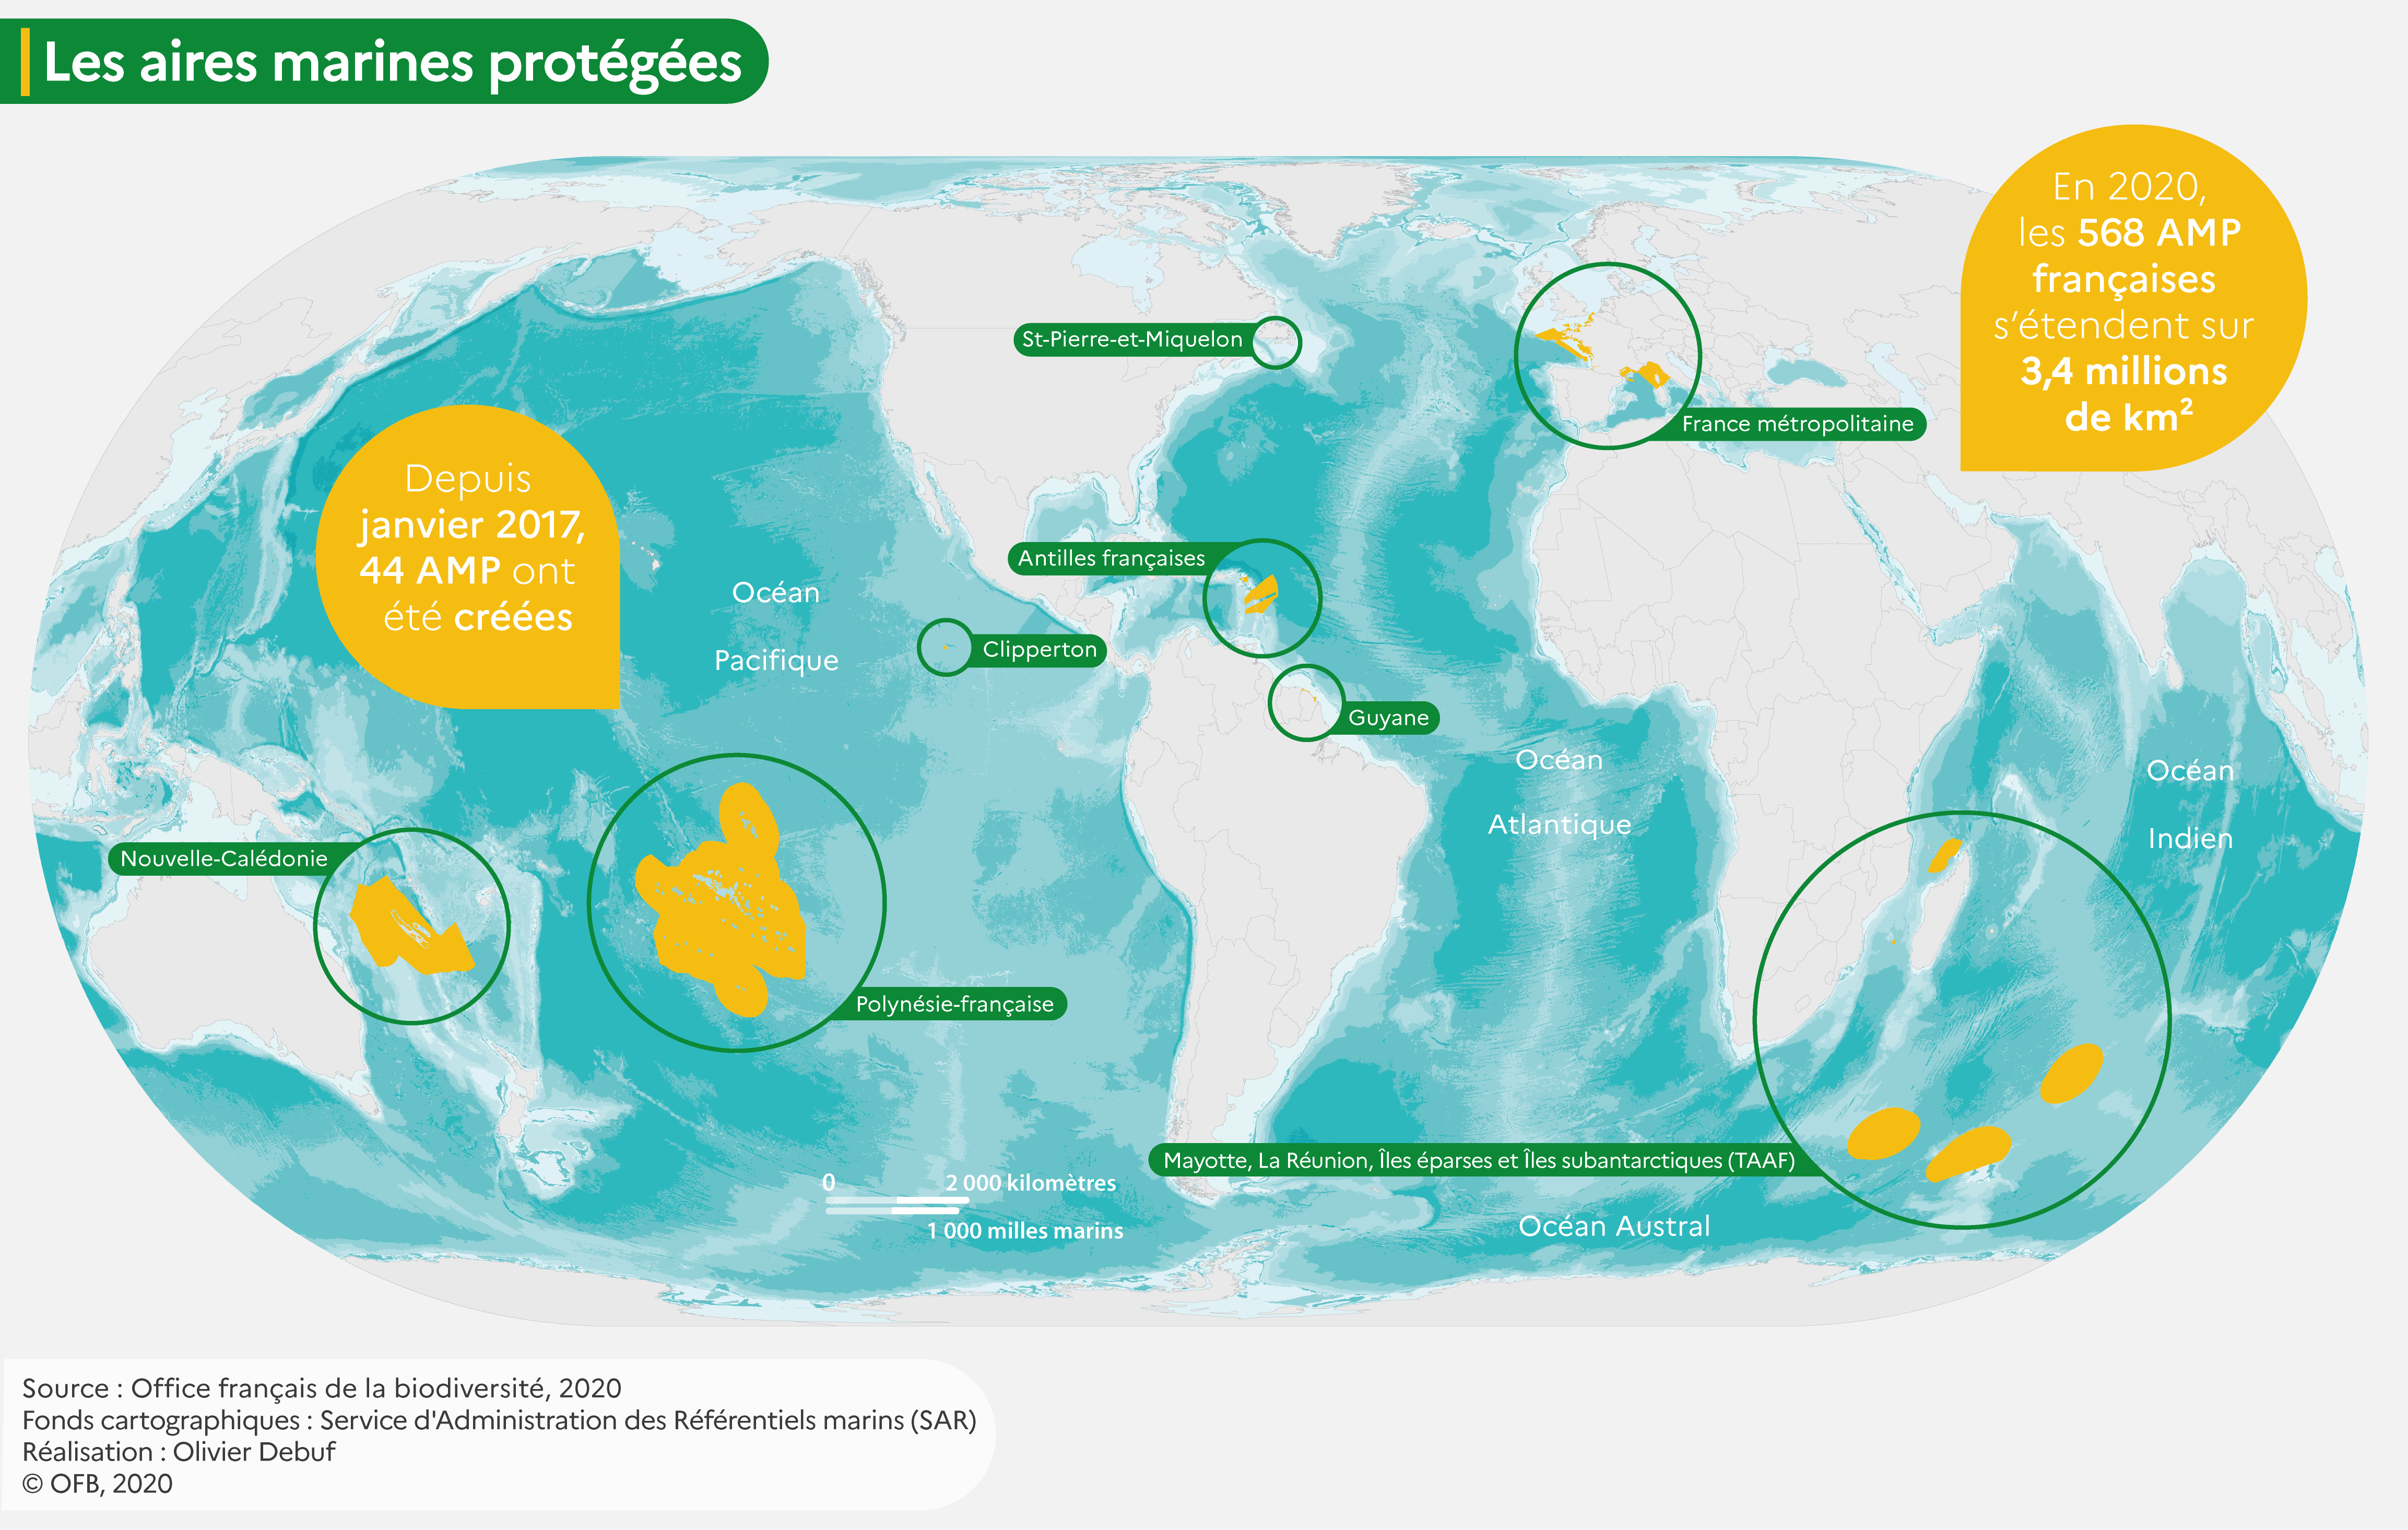 Cartographie “Les aires marines protégées françaises”